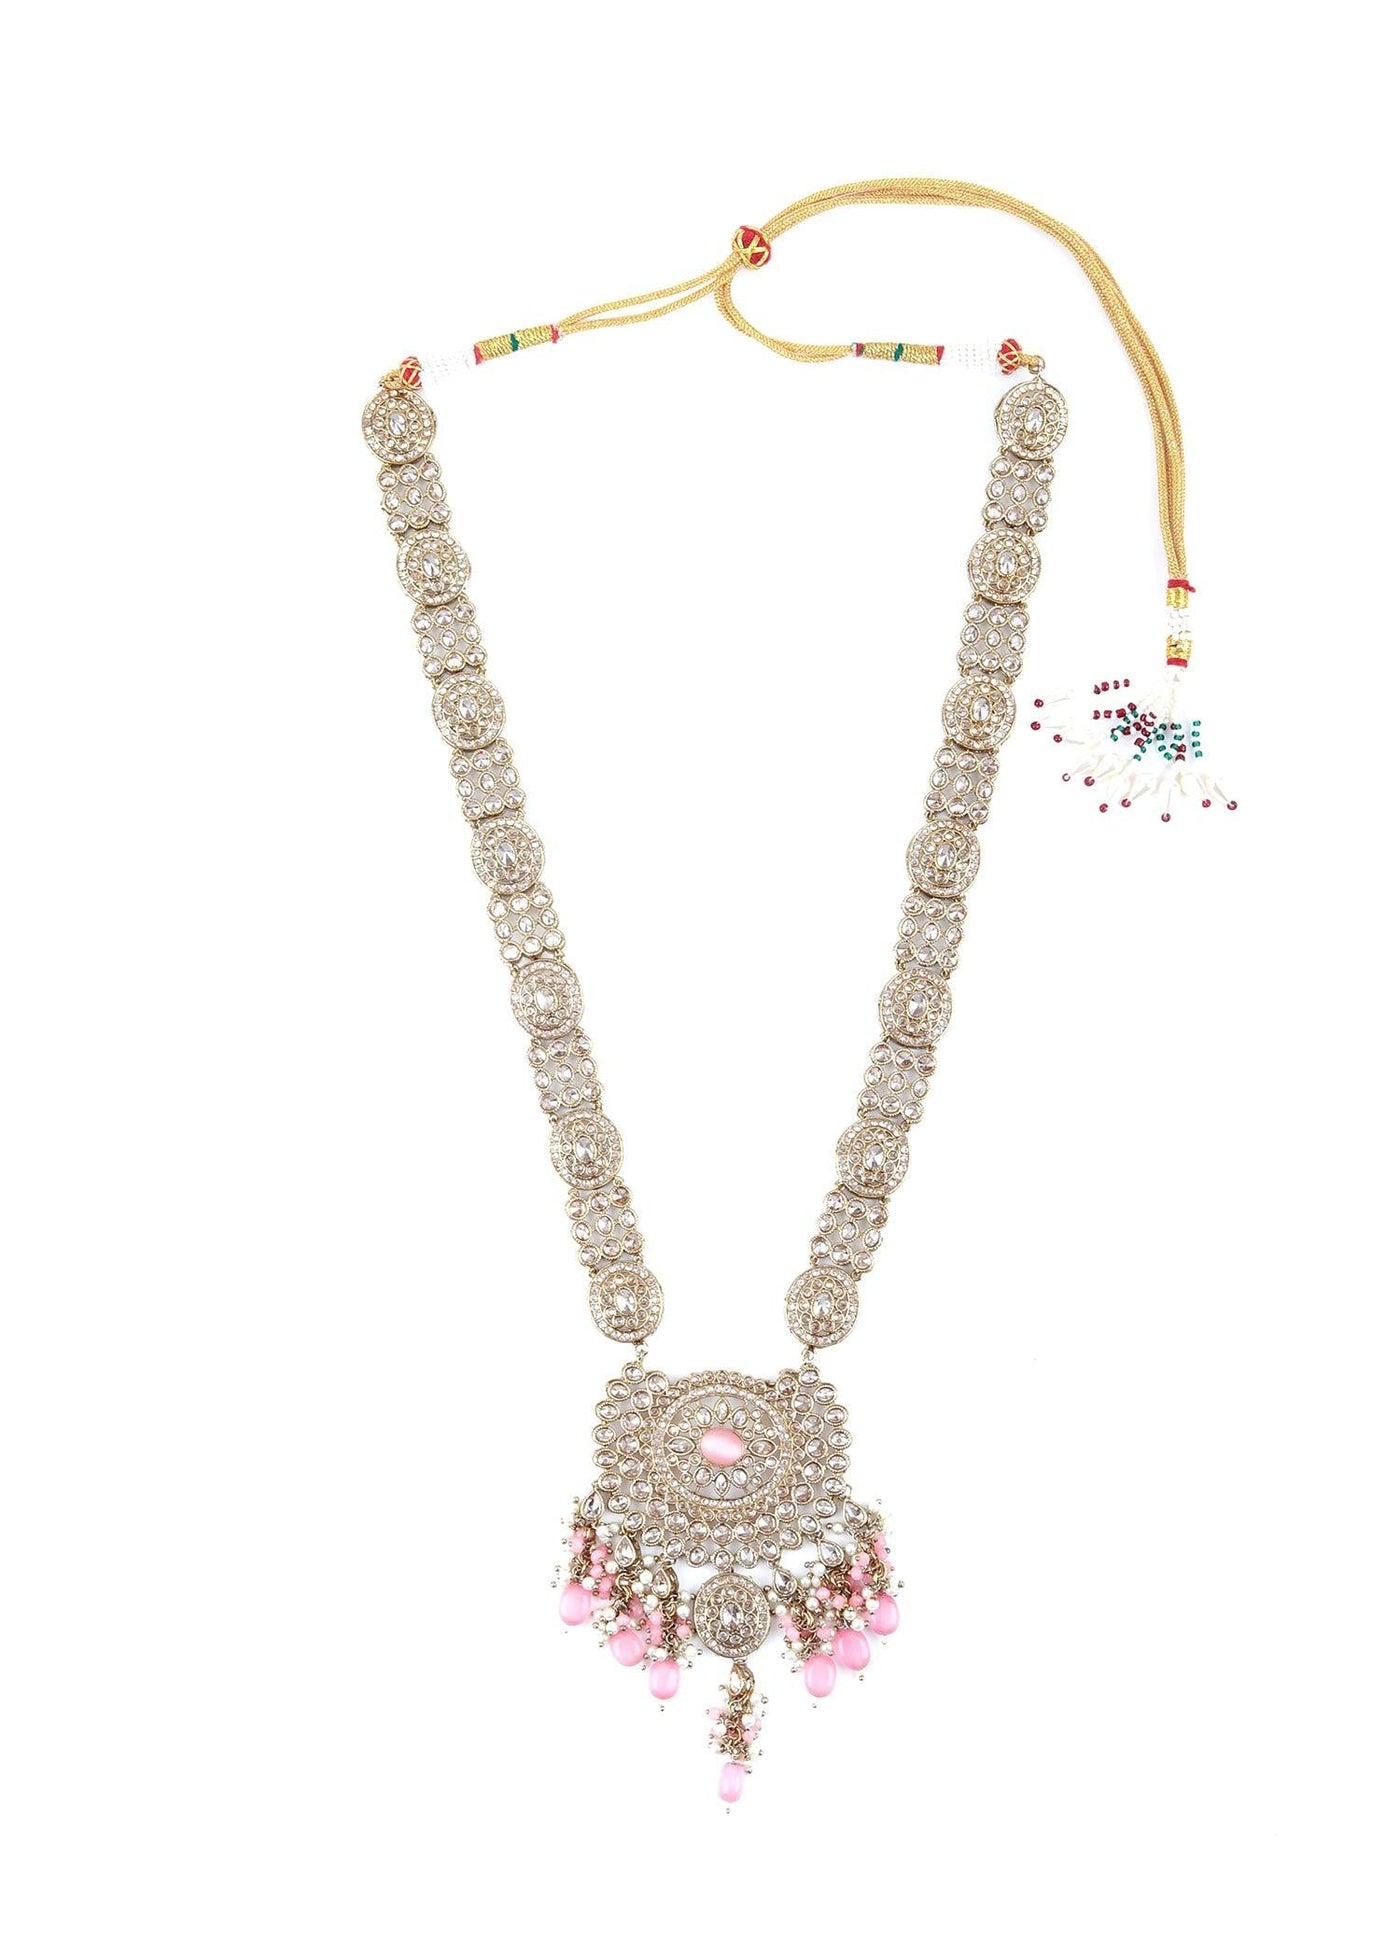 Tint of Gold & Pink Necklace Set - Odette